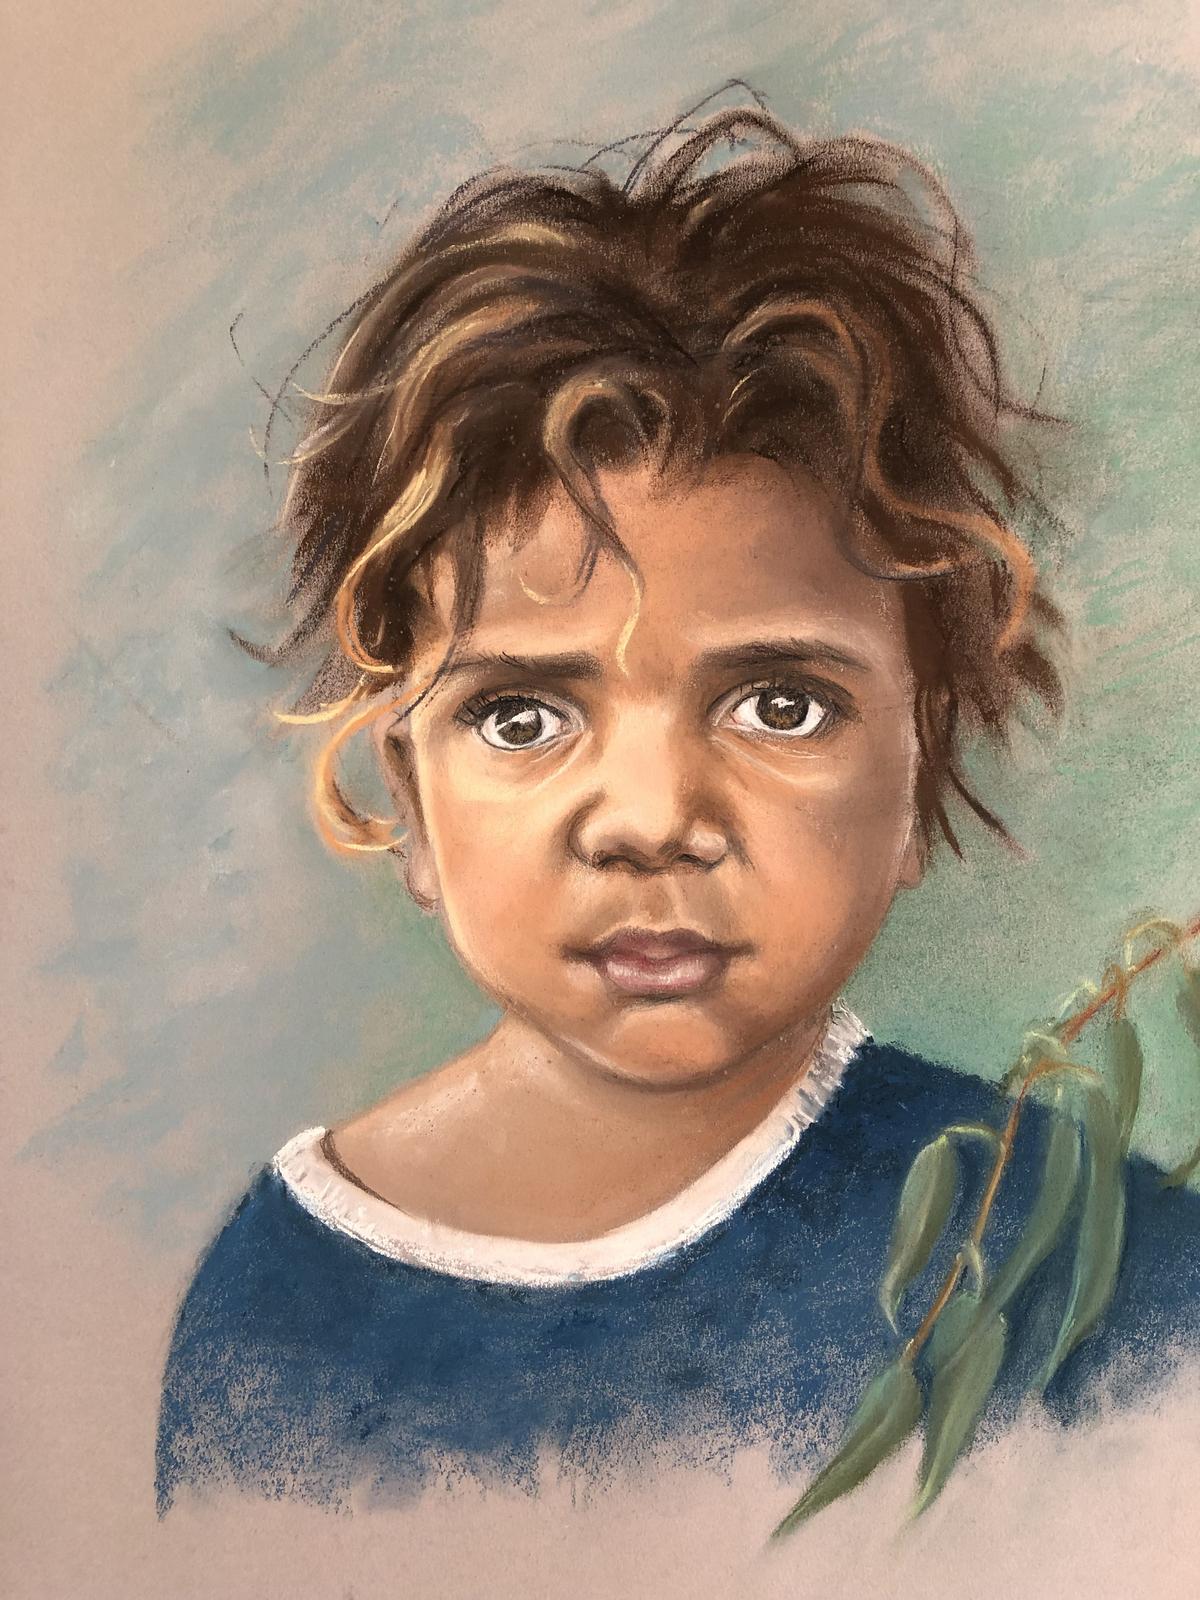 Australian aboriginal boy, by Barbara Schafer. Pastel. (Courtesy of Barbara Schafer)